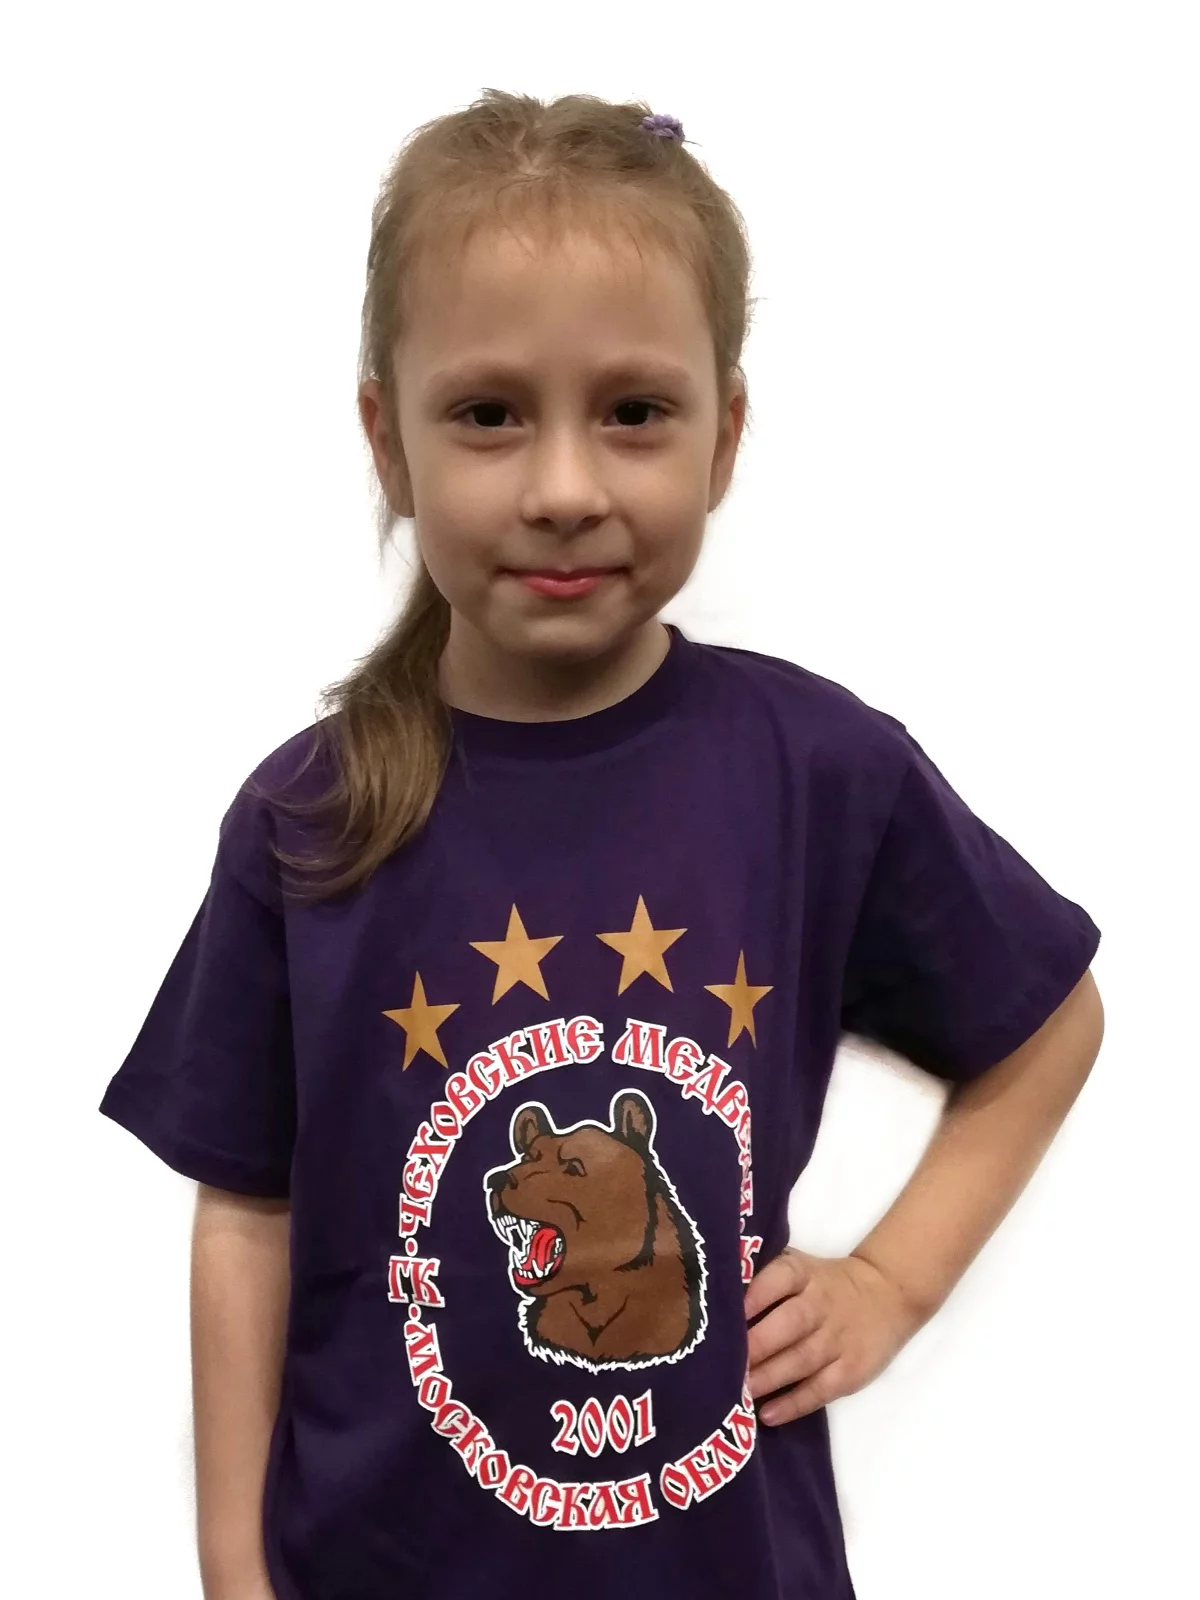 Детская футболка с логотипом "Чеховские медведи"